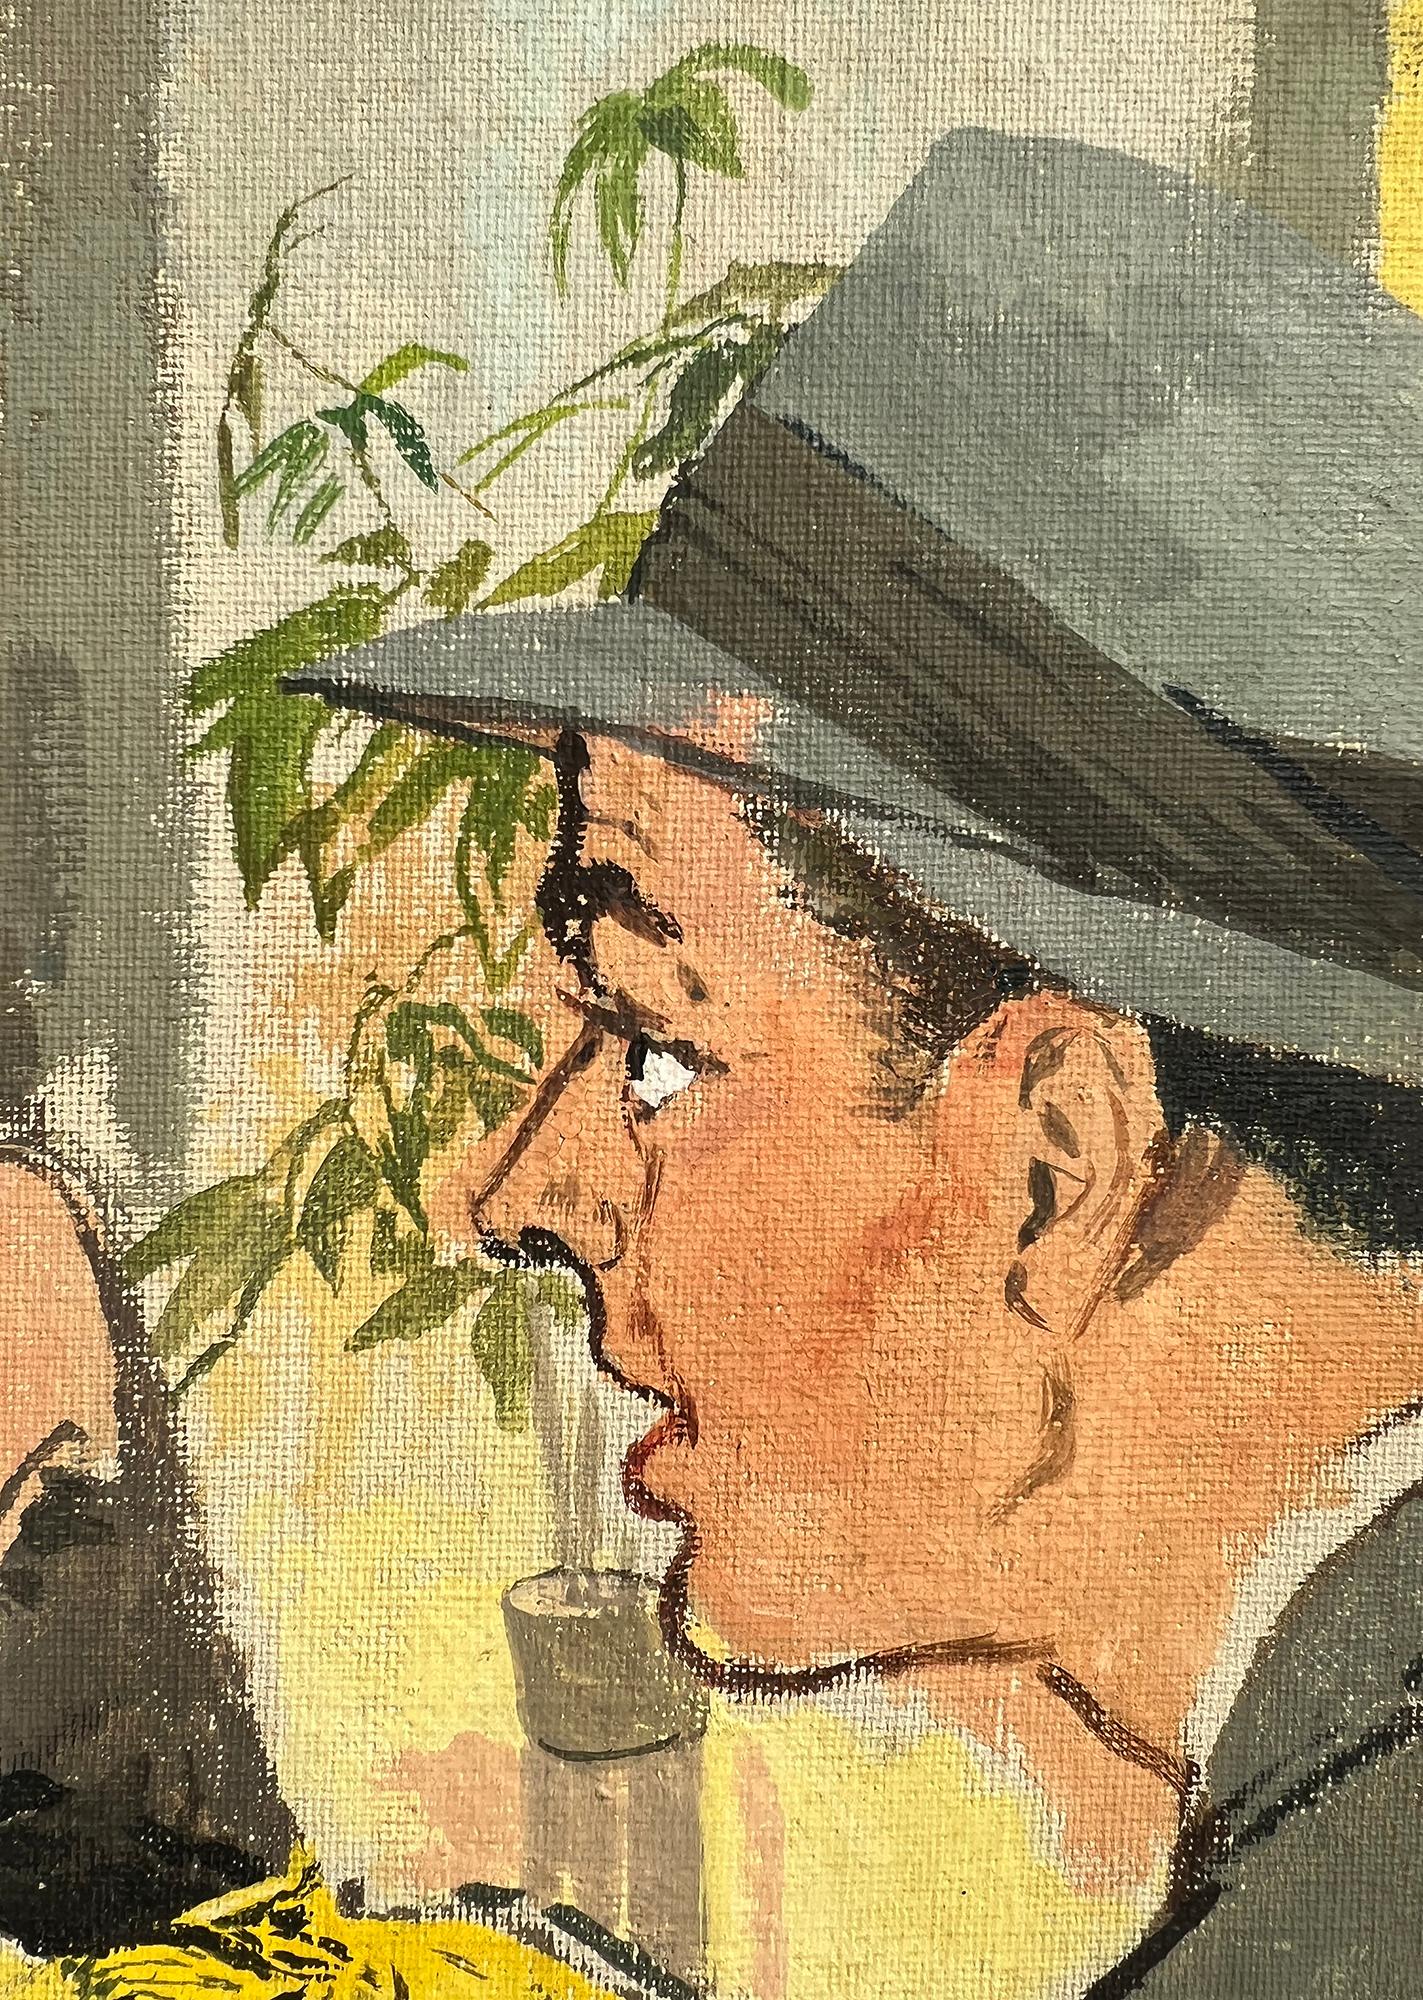 Husband et épouse classiques des années 1950  Perroquet piqué et déchiqueté, illustration de magazine d'Esquire - Painting de Juliette Kida Renault